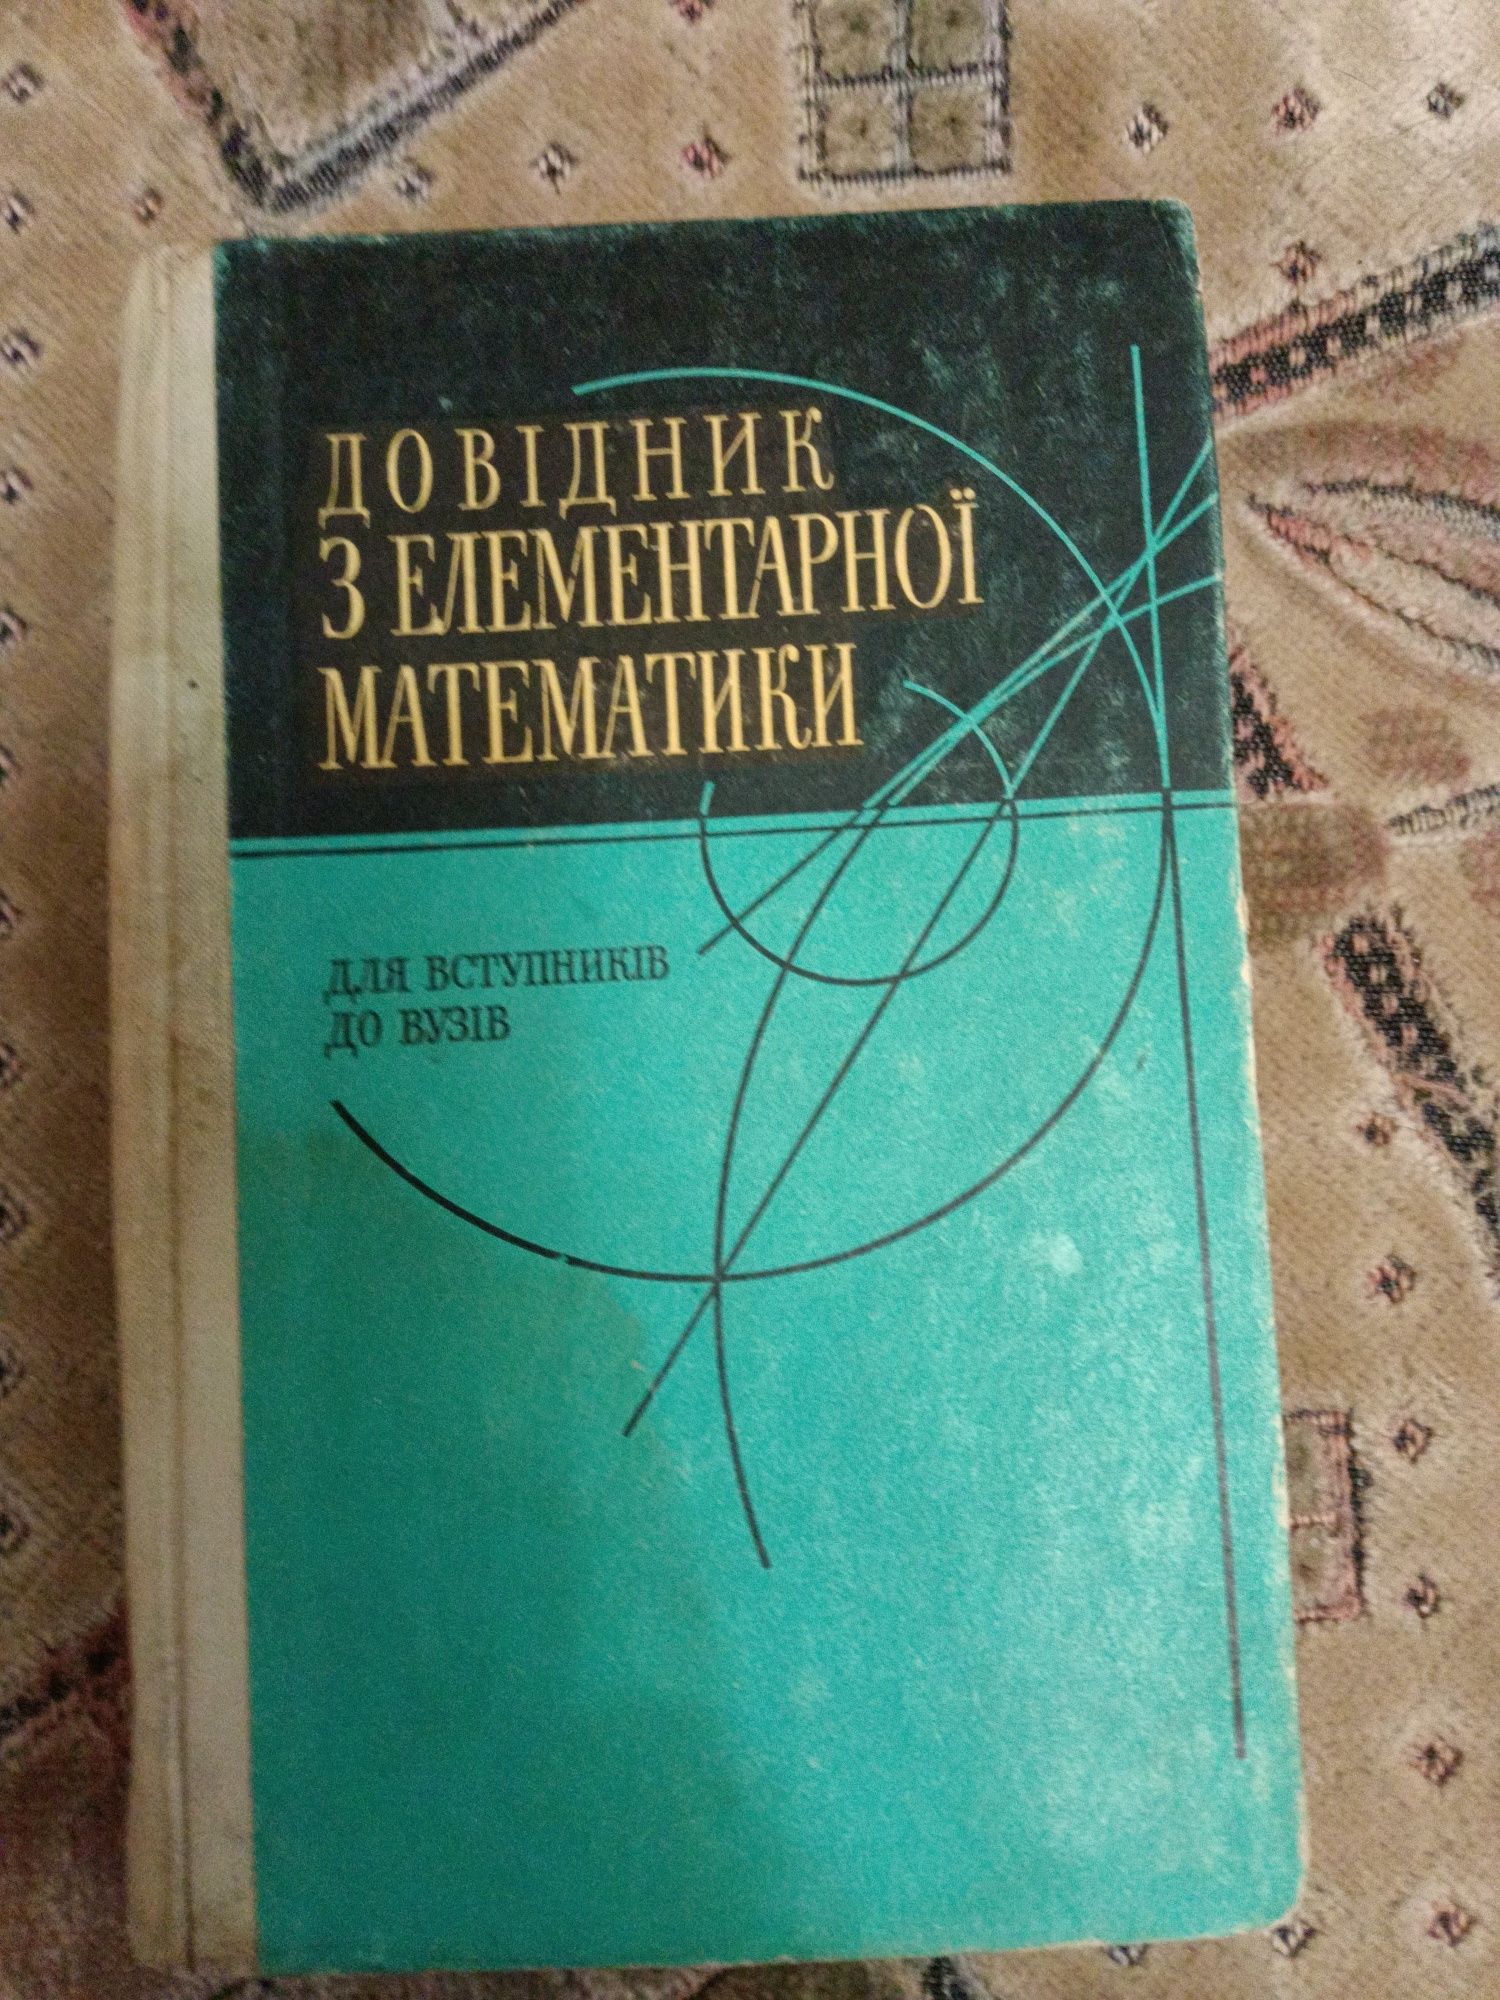 Справочник по элементарной математике на укр. языке